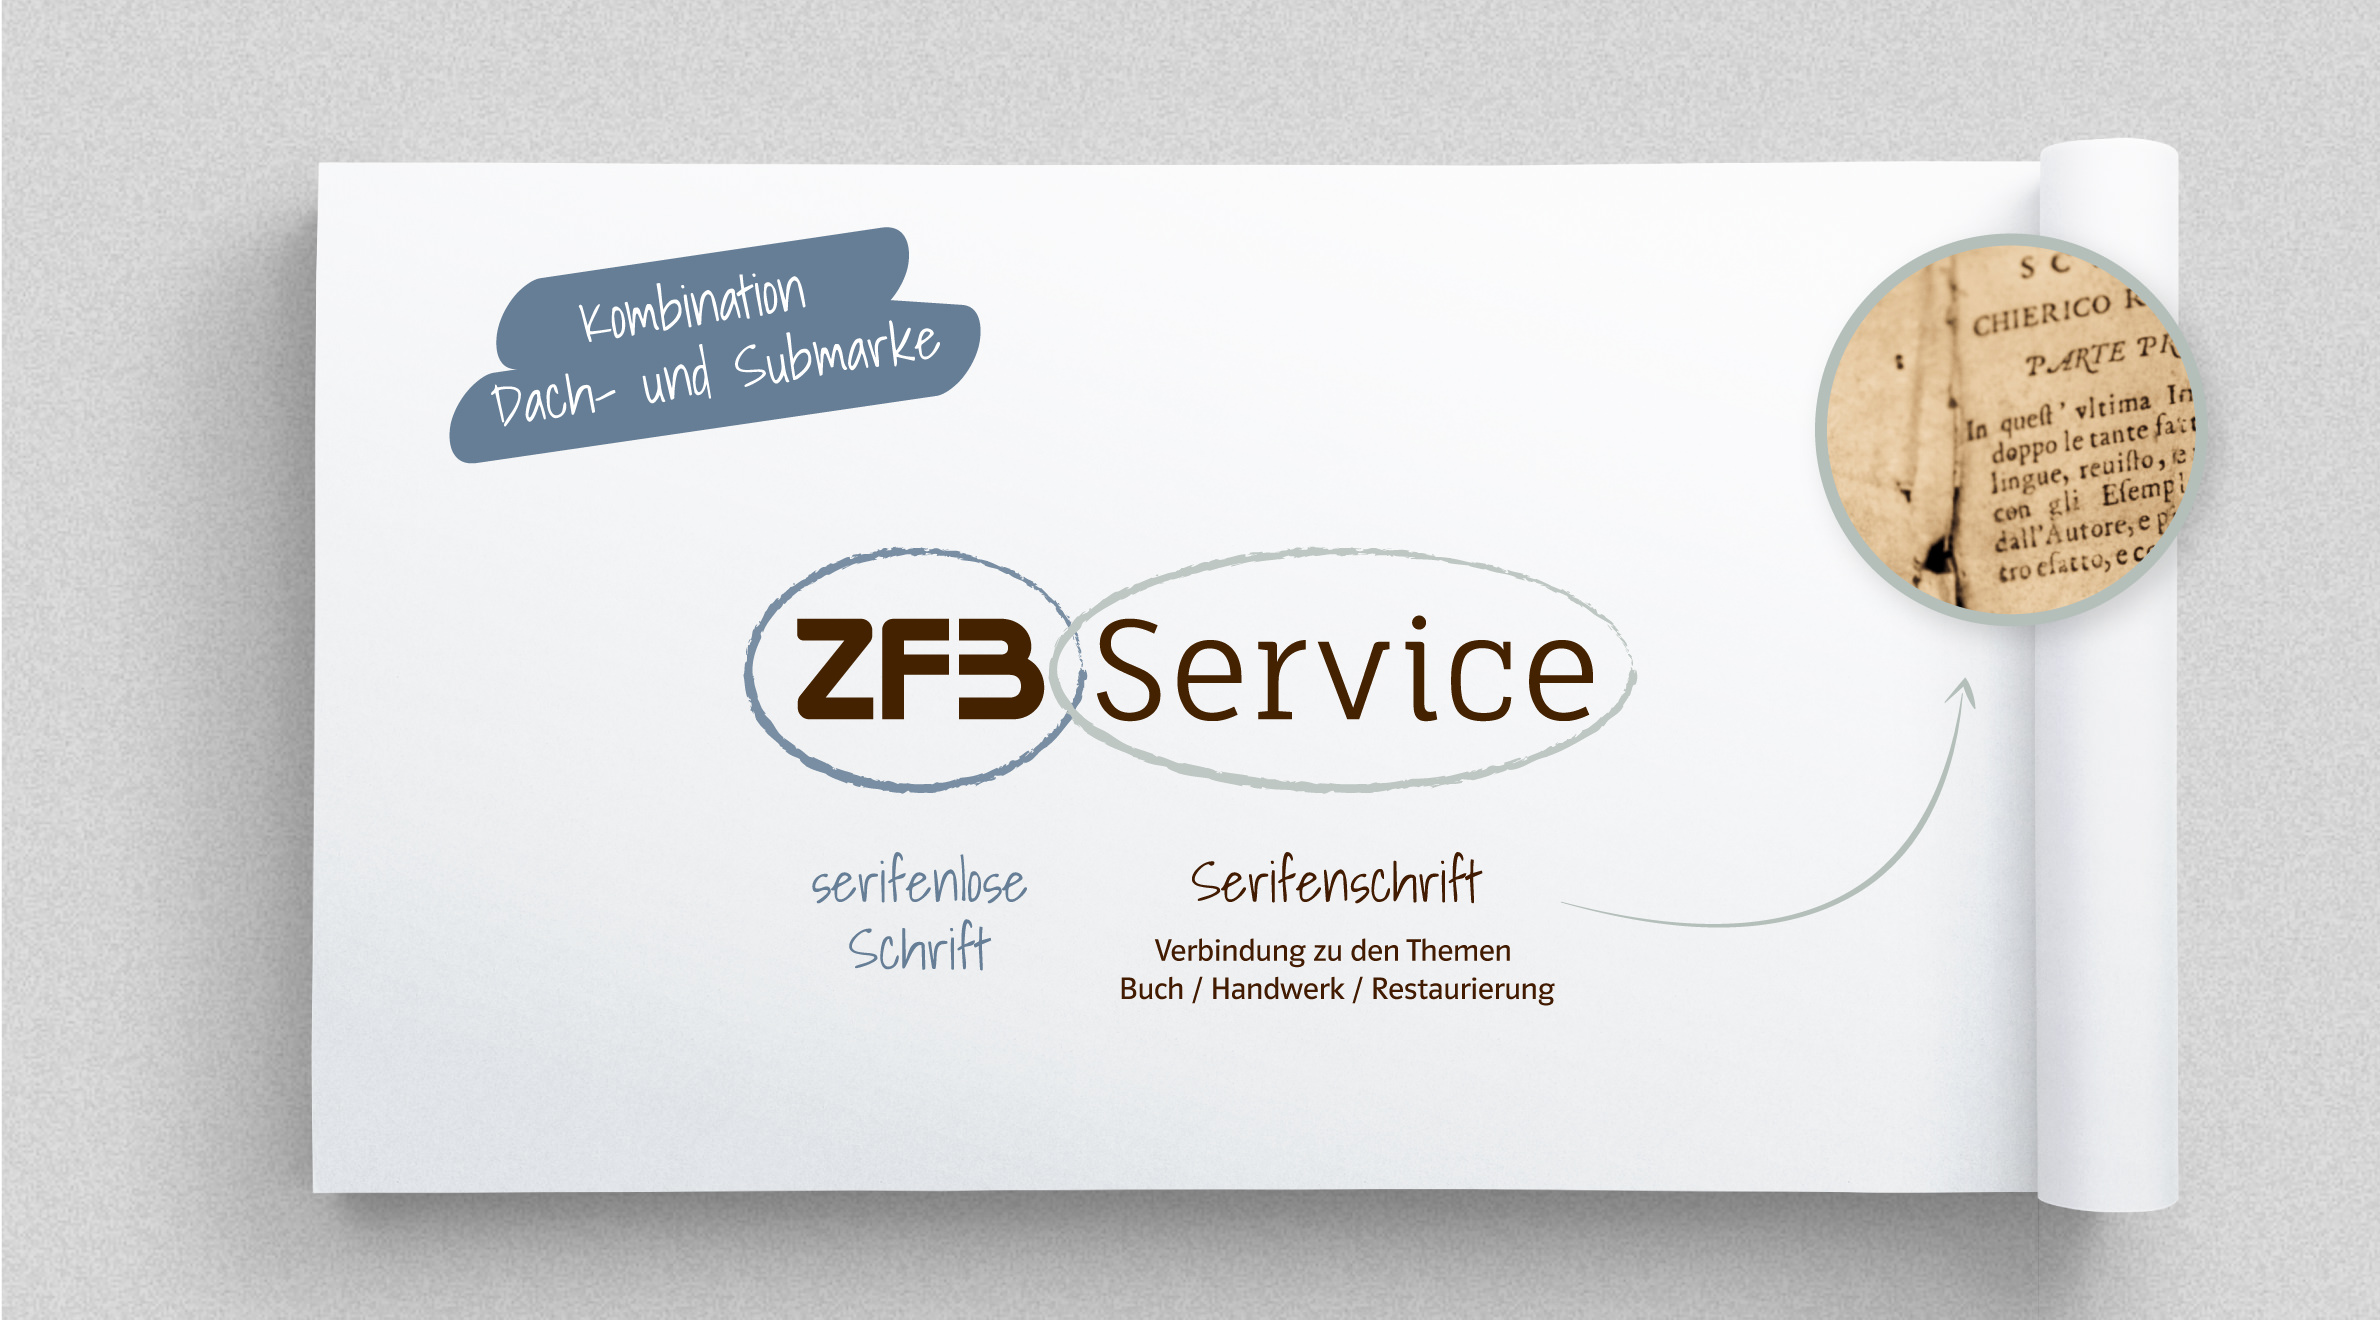 Zentrum für Bucherhaltung - ZFB, Logo - Submarke